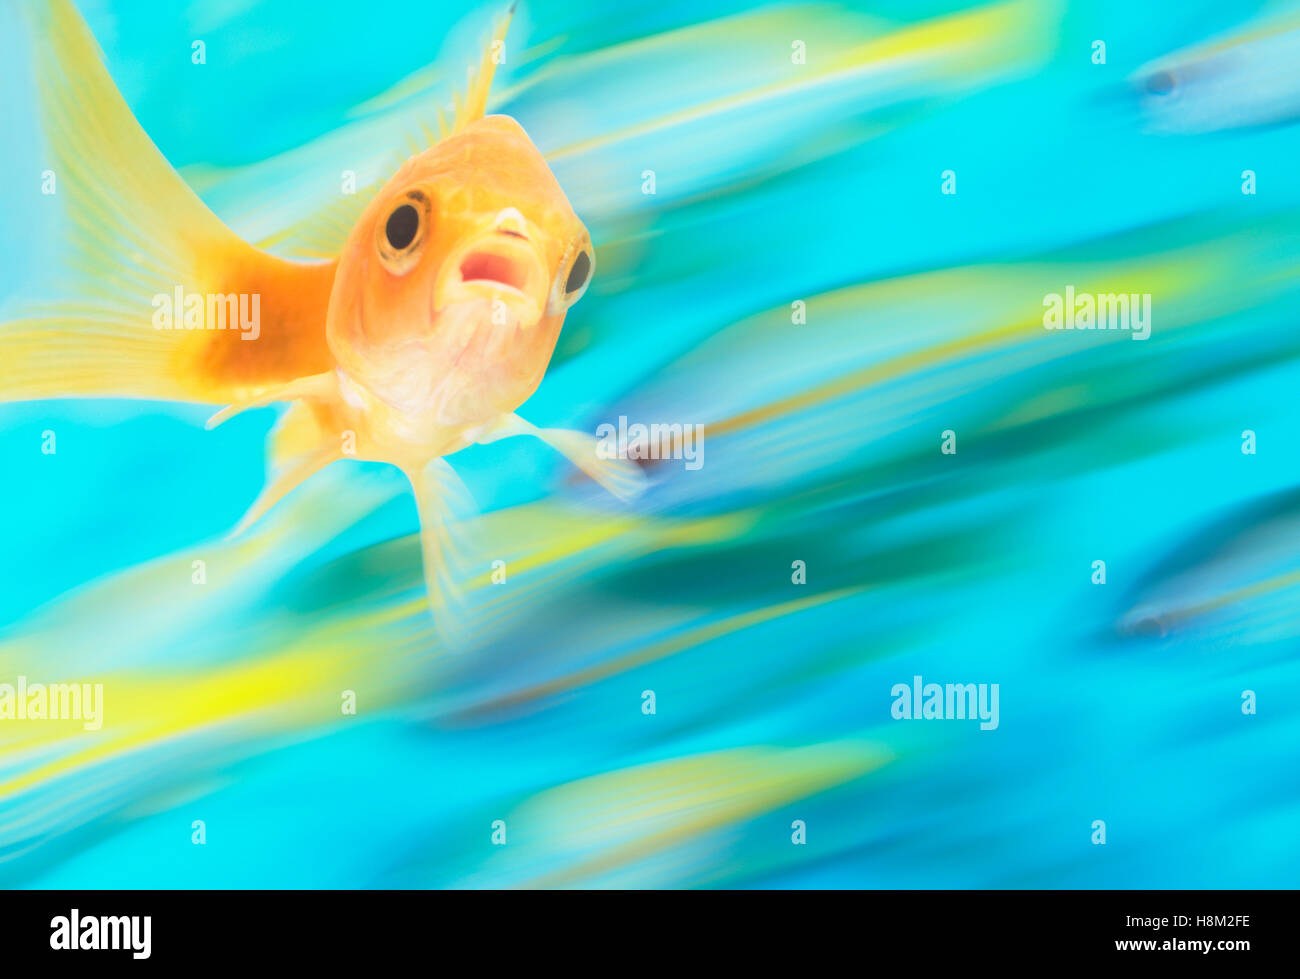 Goldfisch mit Fischschwarm in Bewegung im Hintergrund, digital composite Stockfoto